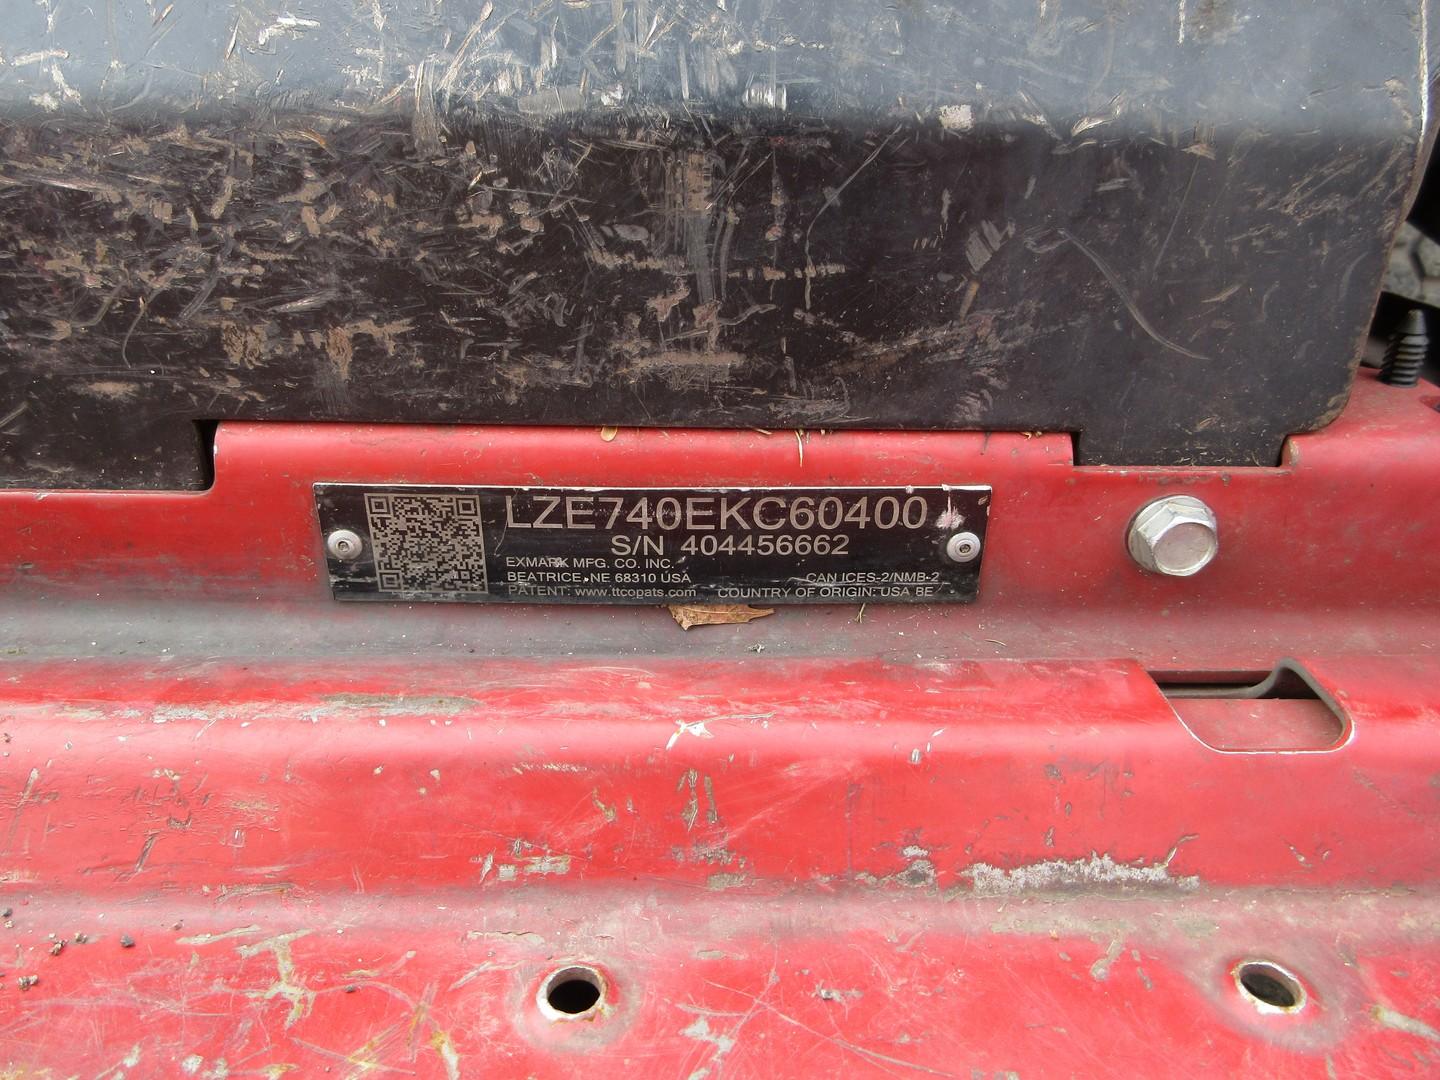 Exmark Lazer Z Zero Turn Mower